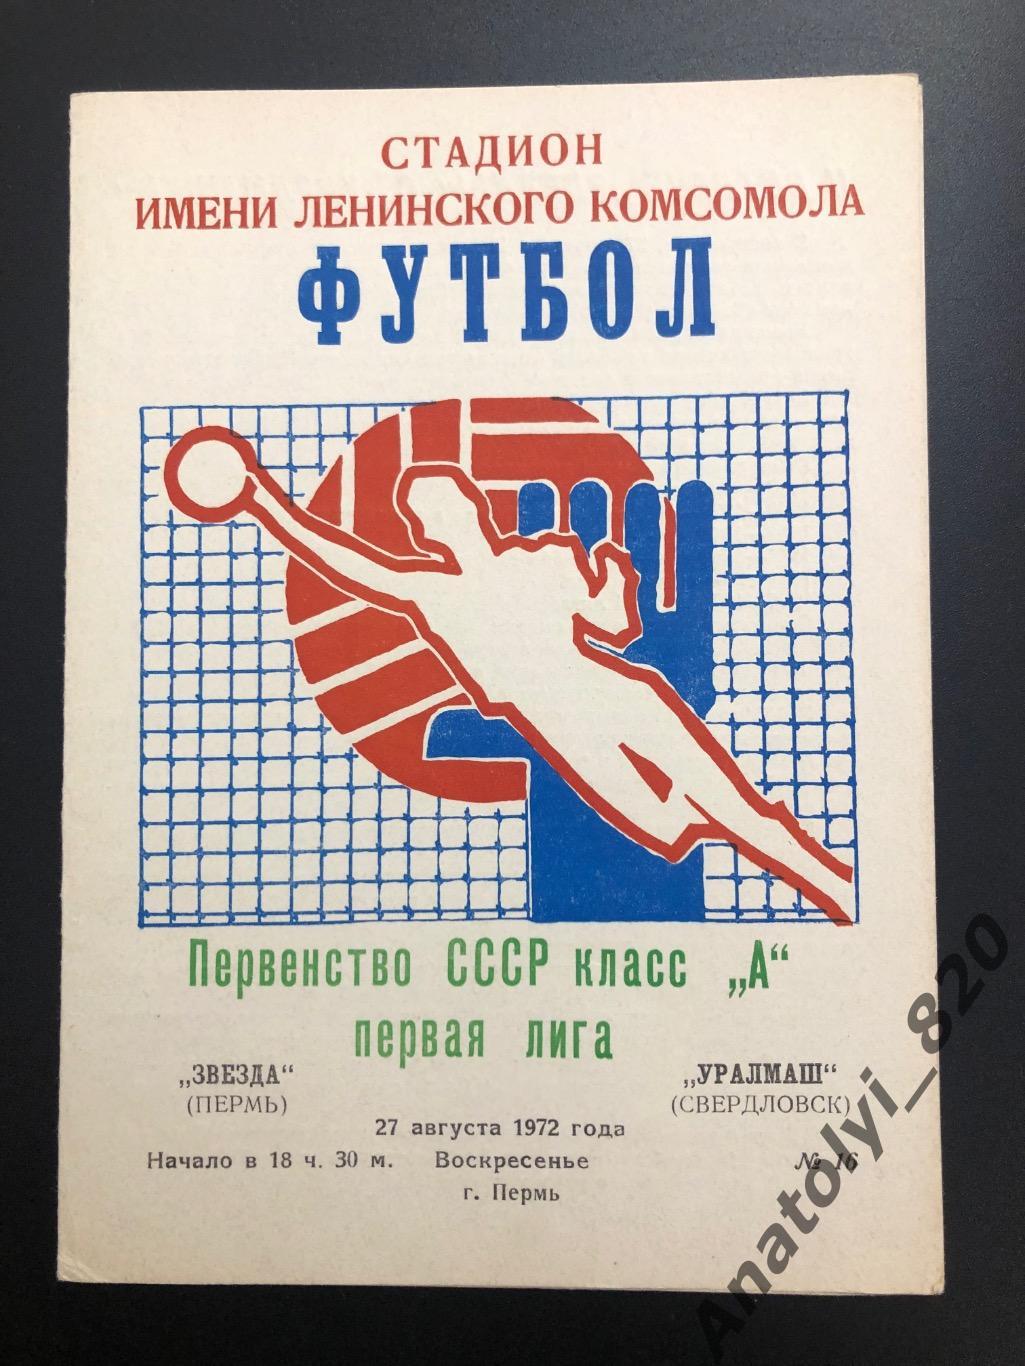 Звезда Пермь - Уралмаш Свердловск, 1972 год